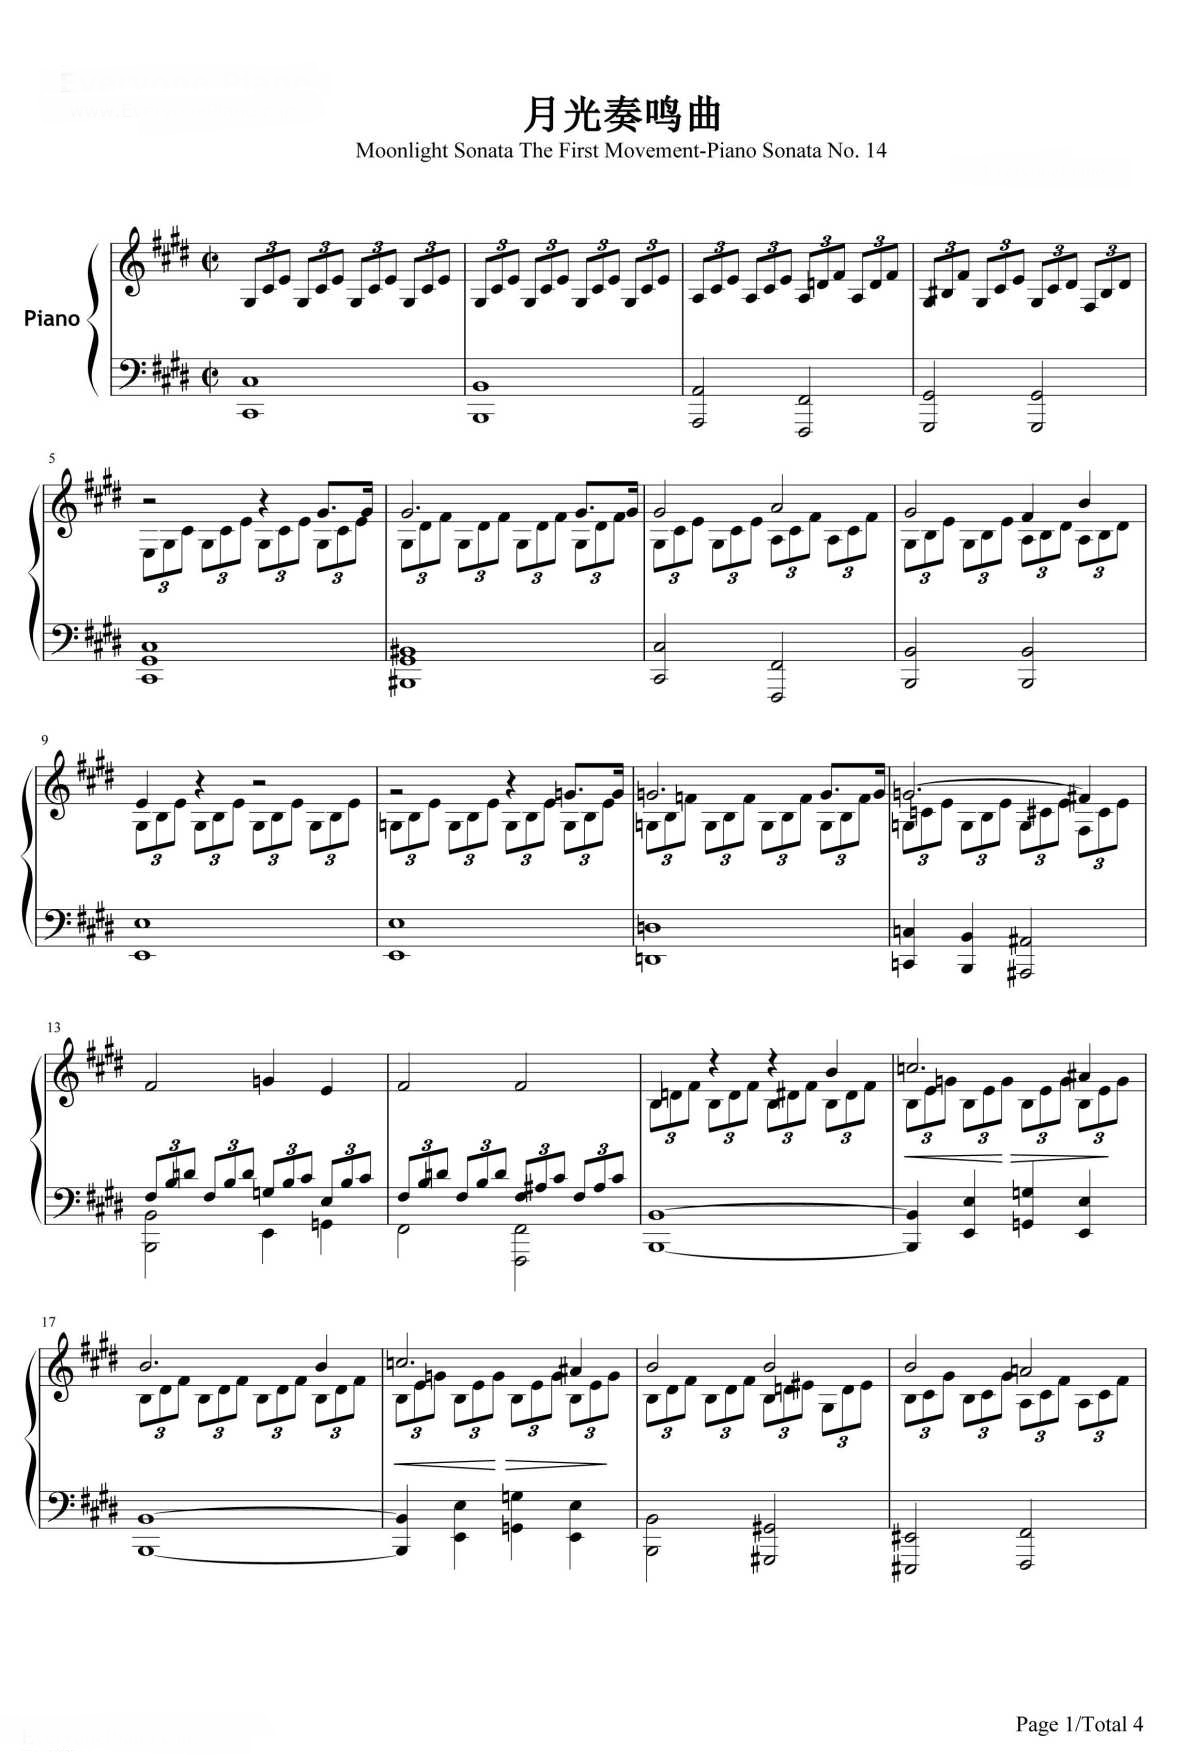 【月光奏鸣曲】的钢琴谱简谱 – 第一乐章
